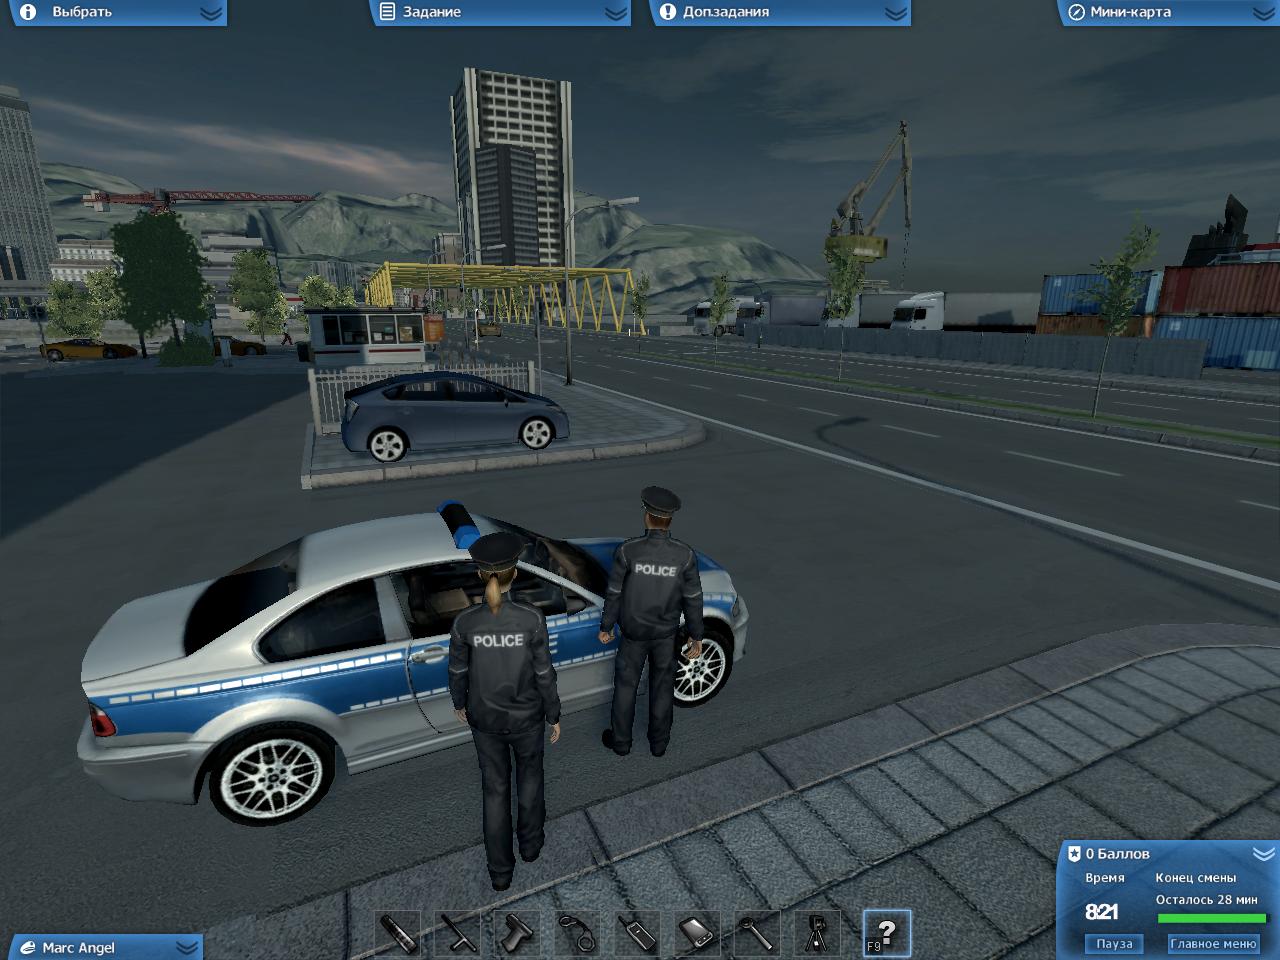 Русские полицейские игры. Police Force 2. The Police игра. Игры про полицию. Полиция игра полиция игра.